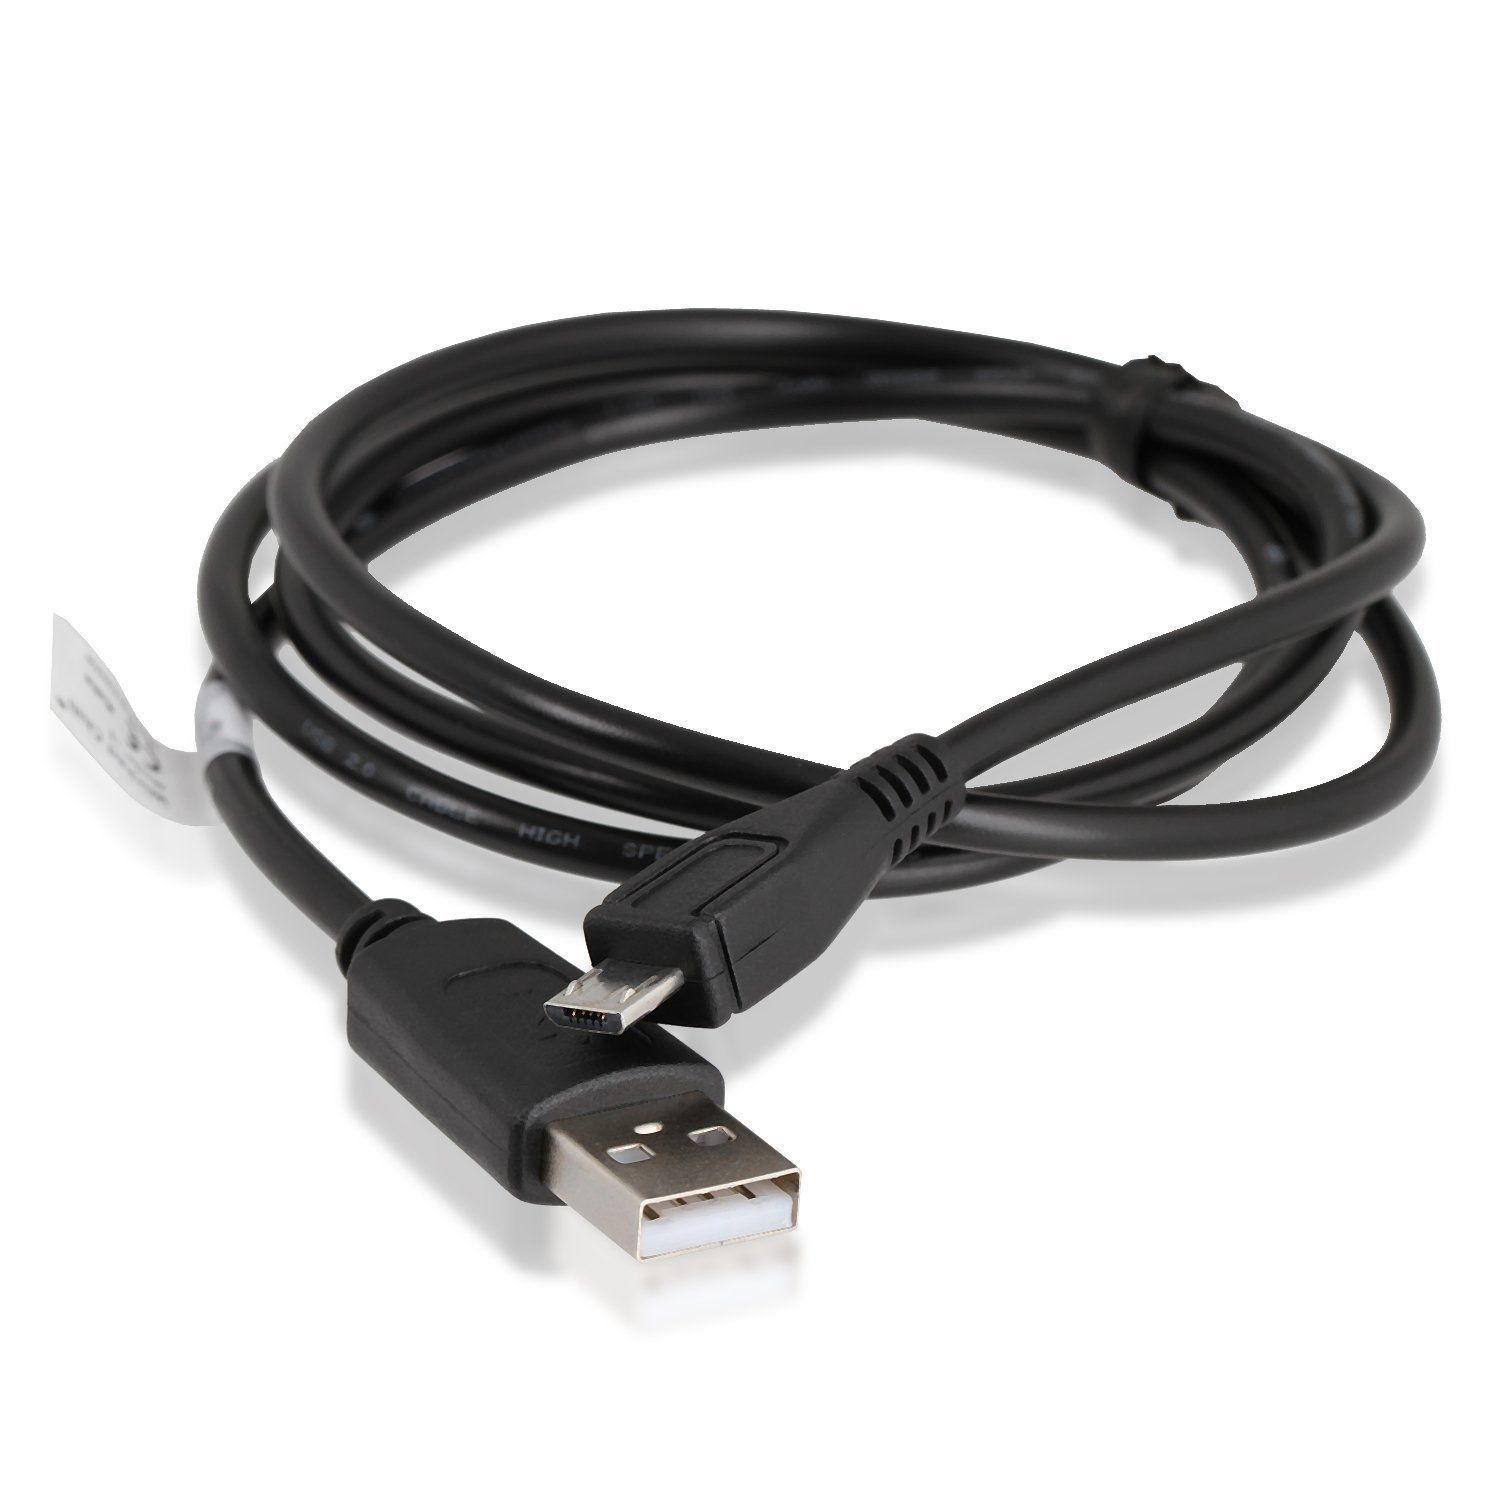 Controller / DualShock CHILI WICKED Micro Set für 4 Ladekabel 180cm Kabel USB Gamepad, Ladekabel, 2er Schwarz für PS4 1,8 m, Wireless